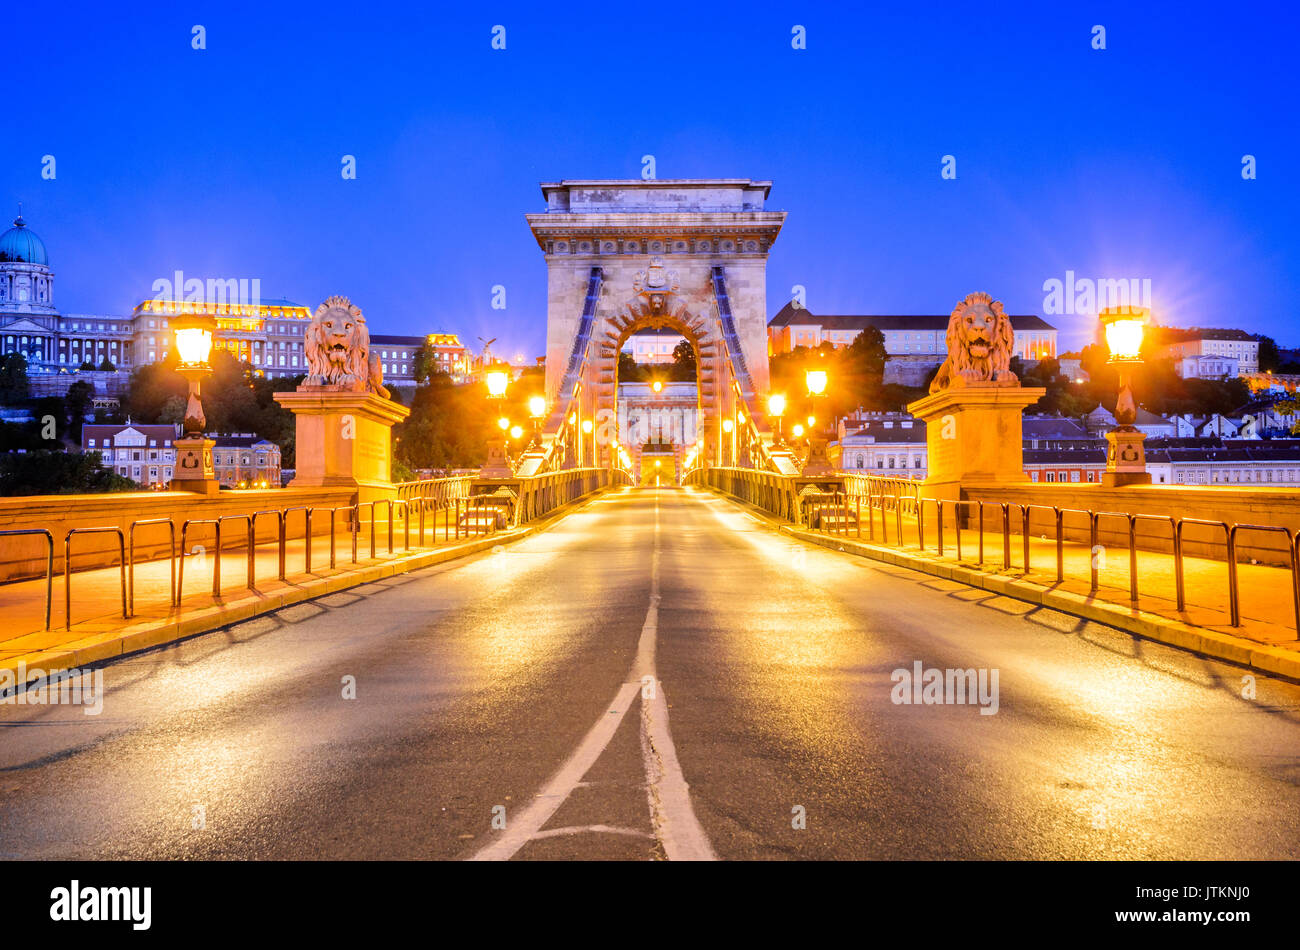 Budapest, Ungarn - Kettenbrücke, Szechenyi Lanchid. Federung, überspannt den Fluss Donau zwischen Buda und Pest, die in der ungarischen Hauptstadt. Stockfoto